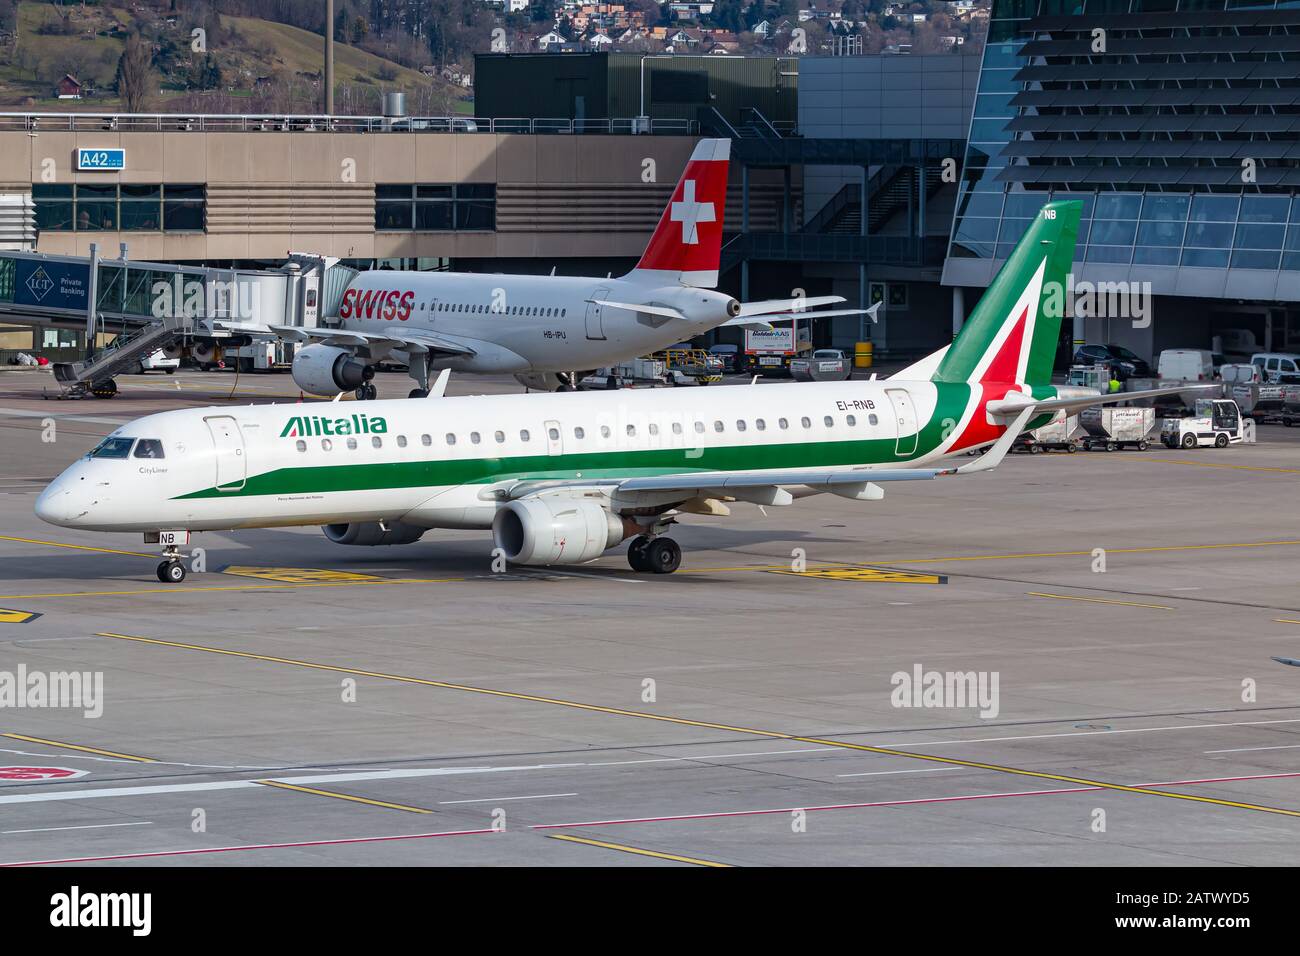 Zurich, Switzerland - February 1, 2020: Alitalia Embraer E195 airplane at Zurich airport (ZRH) in Switzerland. Stock Photo